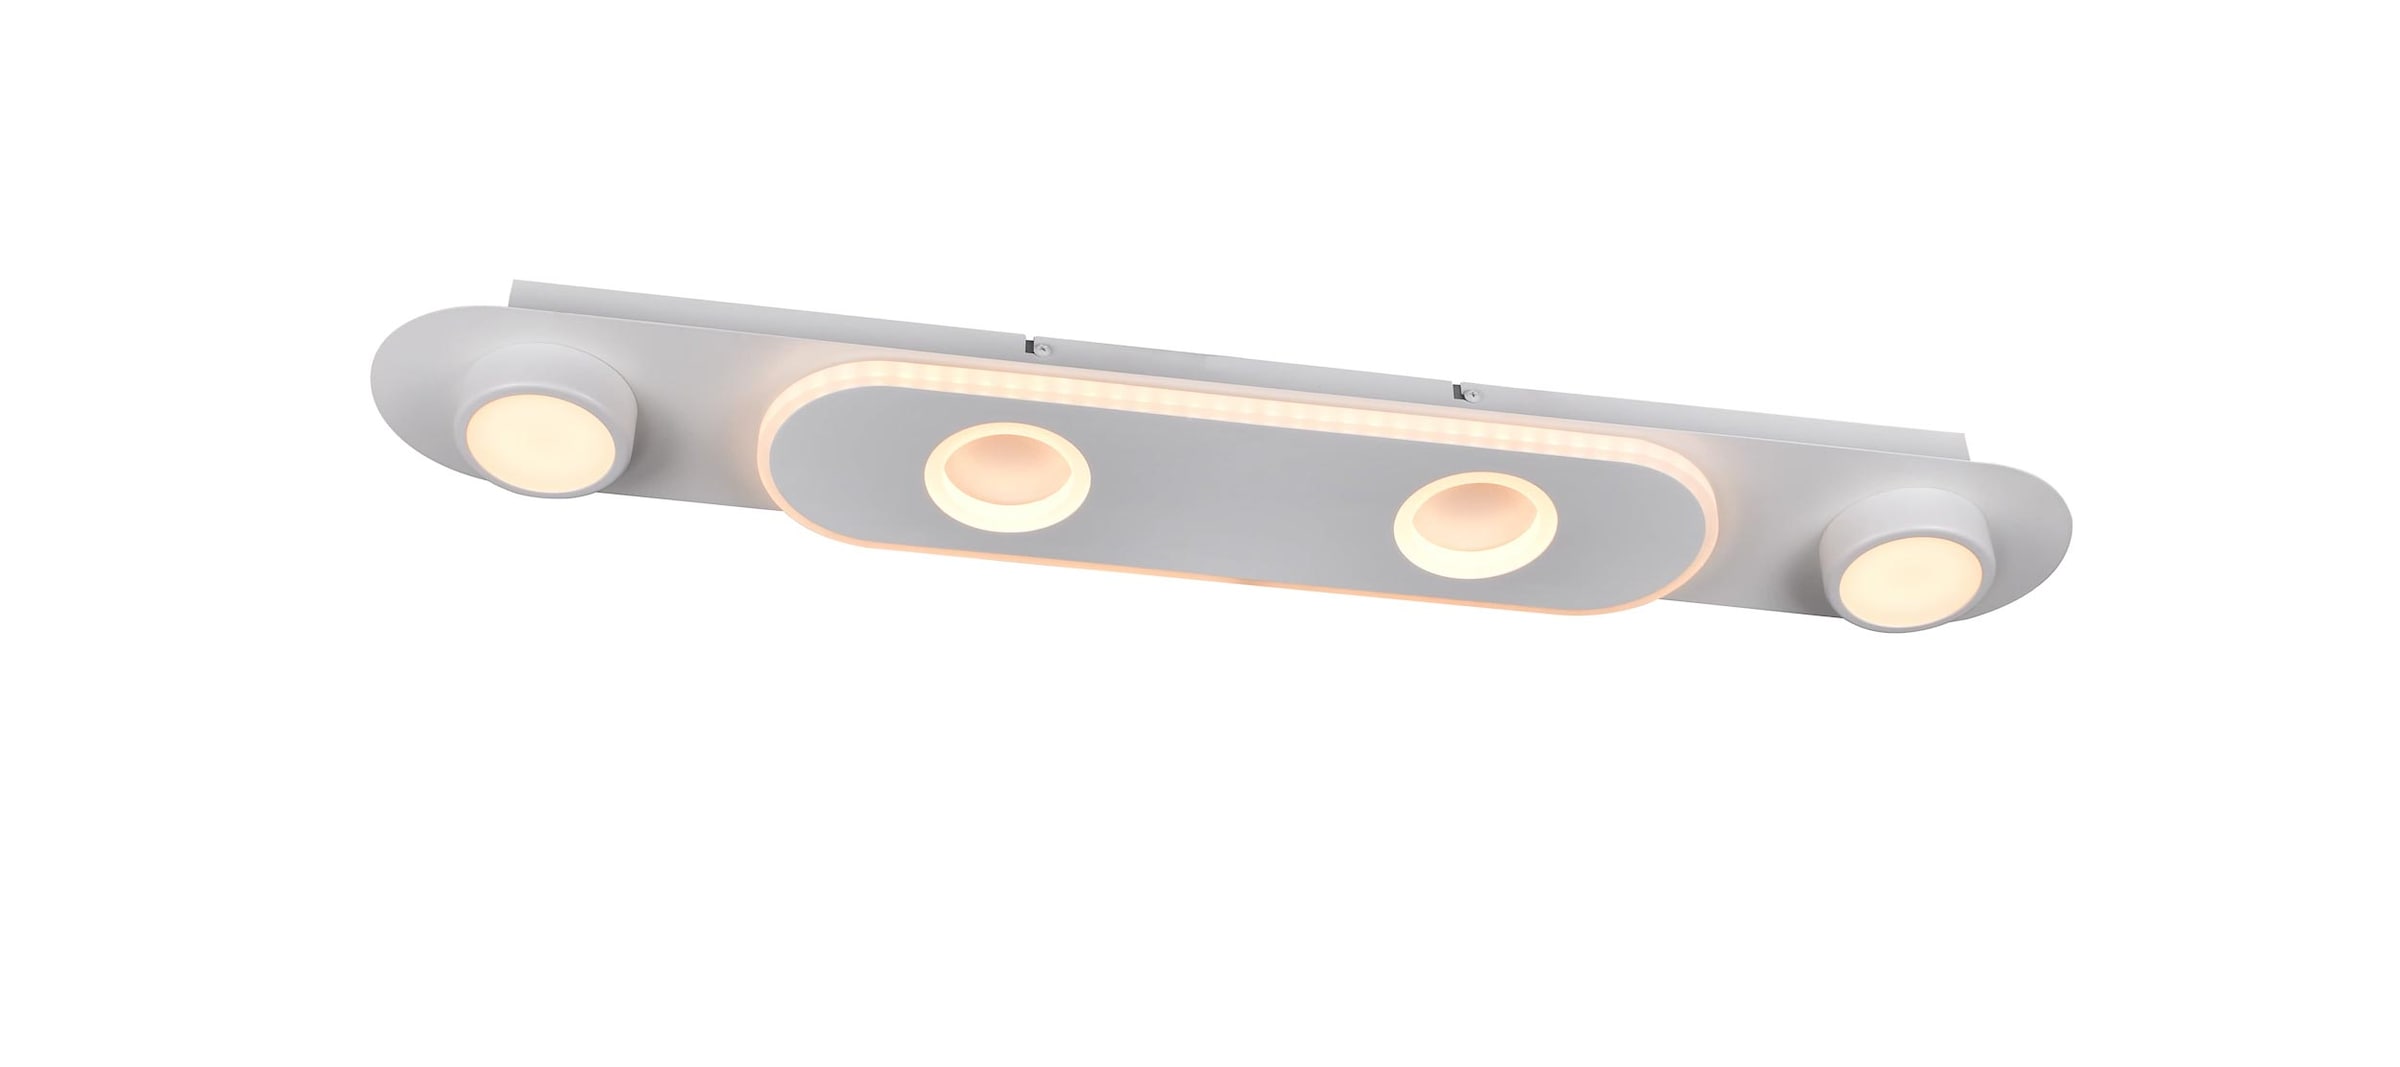 Brilliant LED Deckenstrahler »Irelia«, 1 flammig-flammig, 80 cm Breite, 3500 lm, warmweiss, schwenkbar, Metall/Kunststoff, weiss